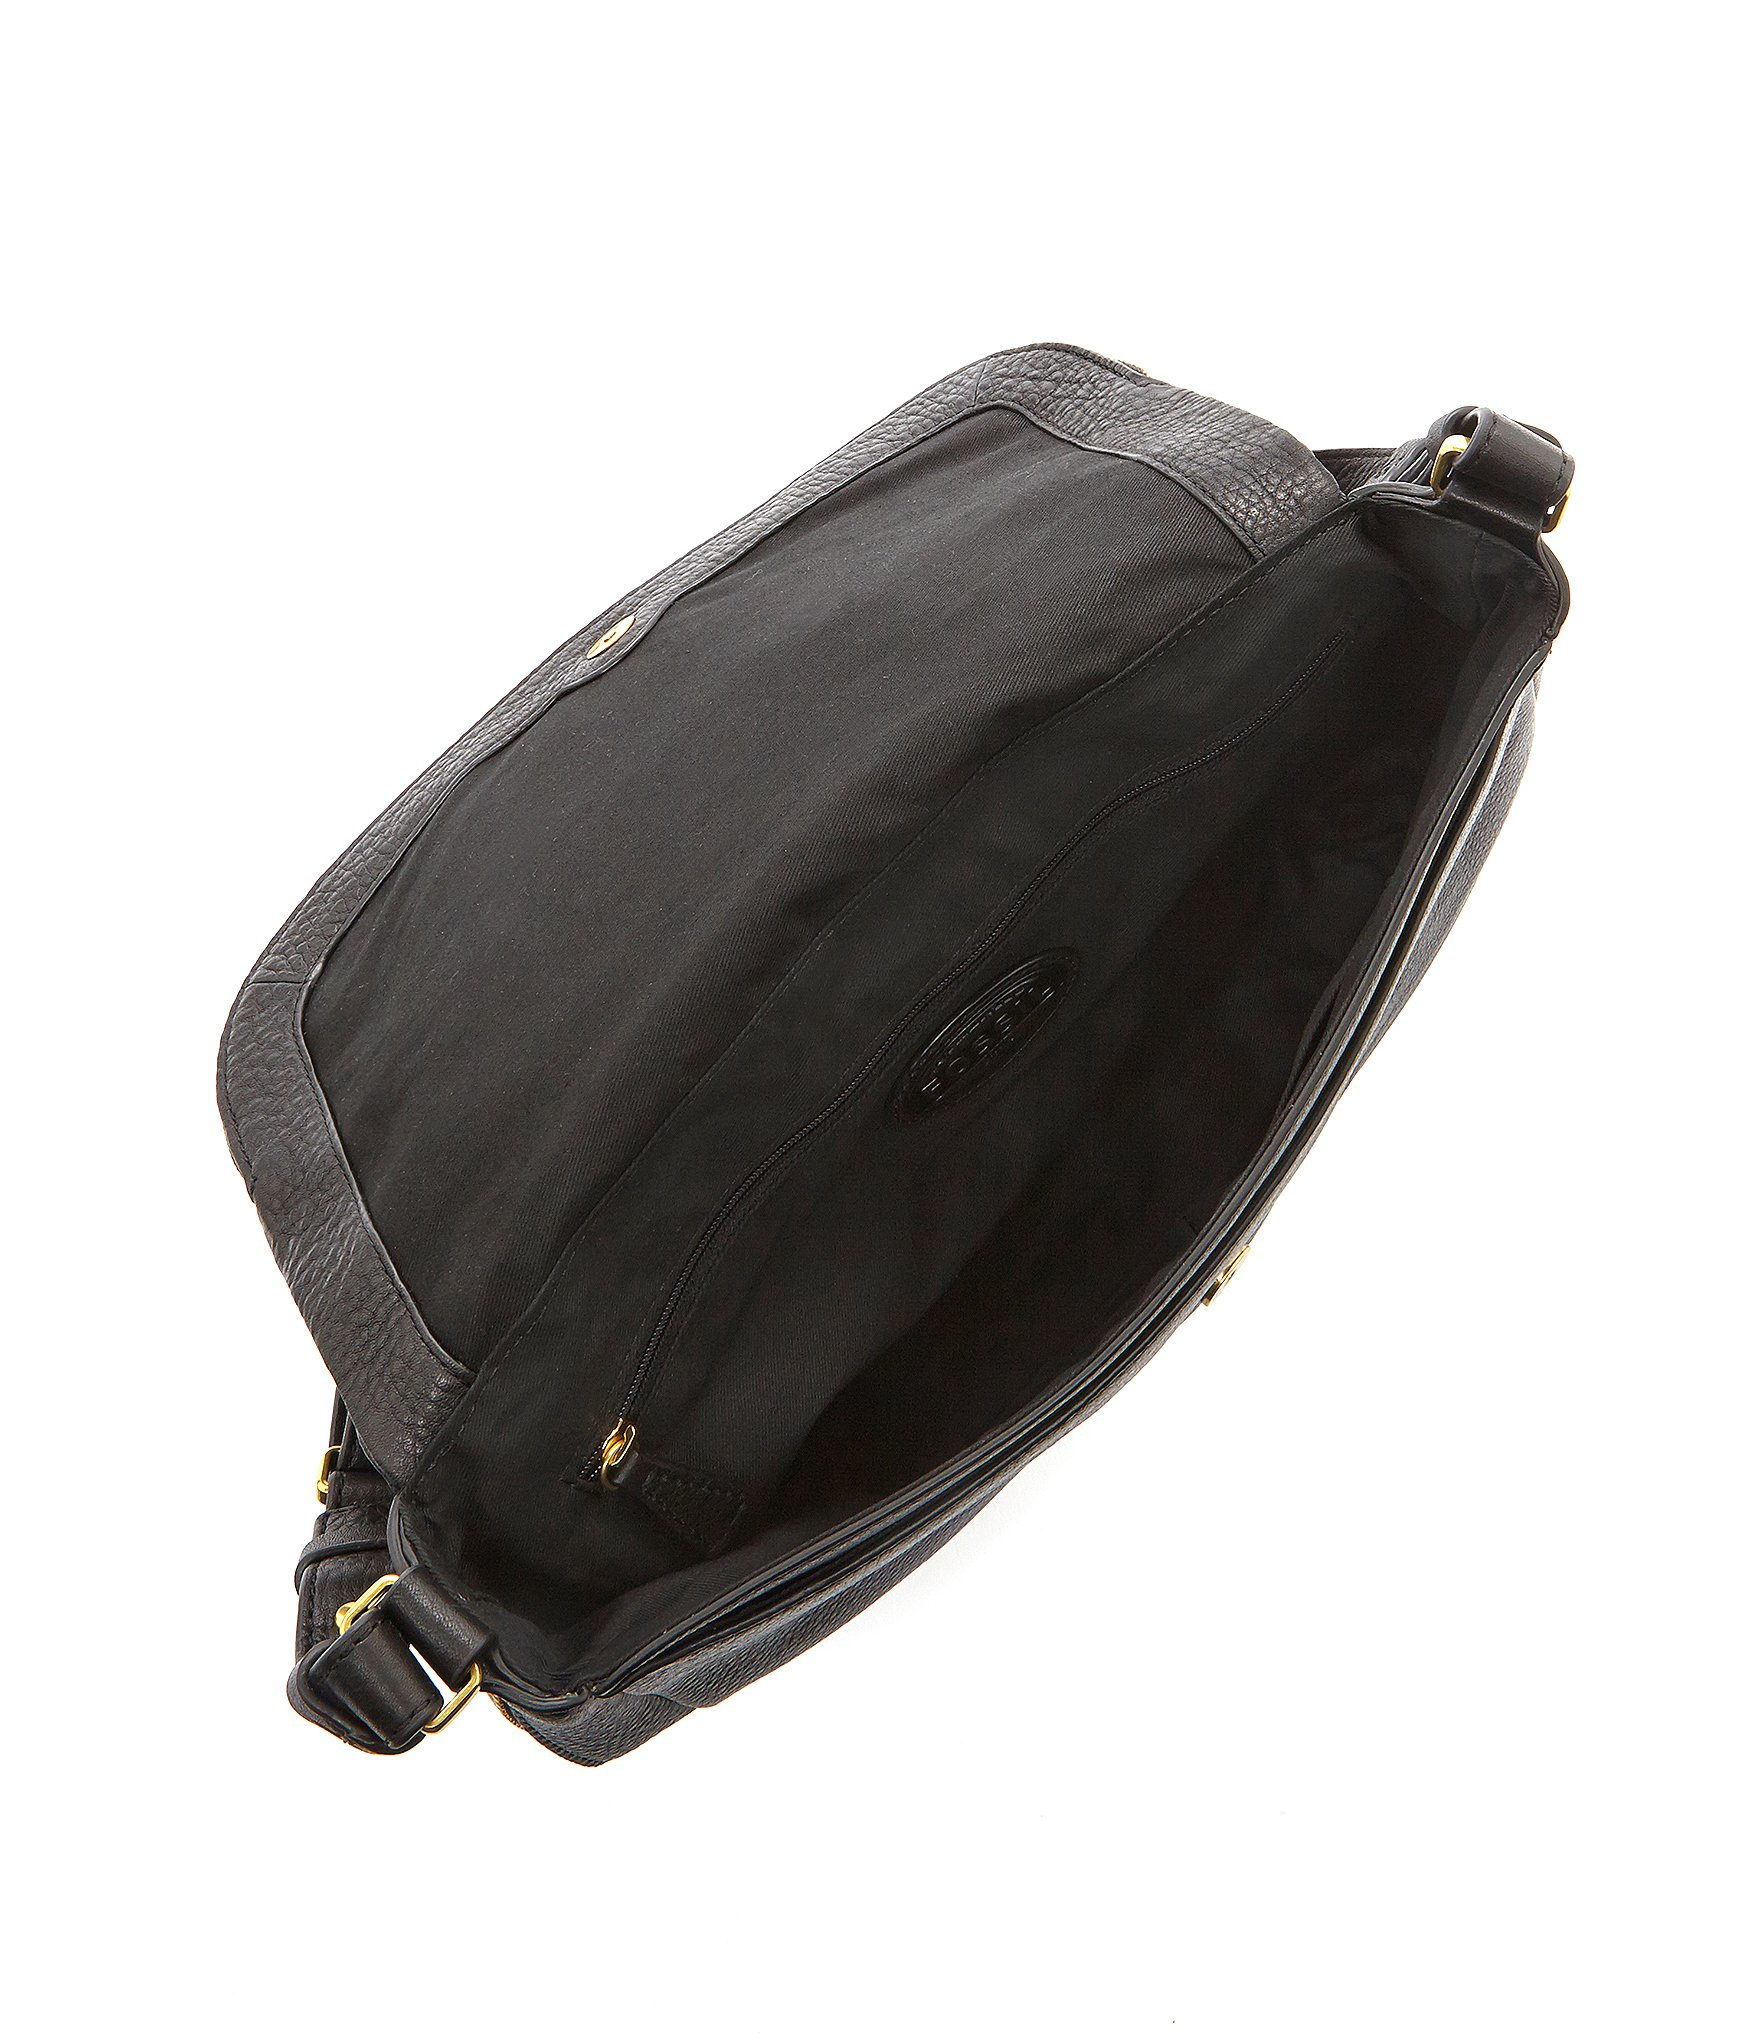 Fossil Sydney Leather Crossbody Bag in Black | Lyst